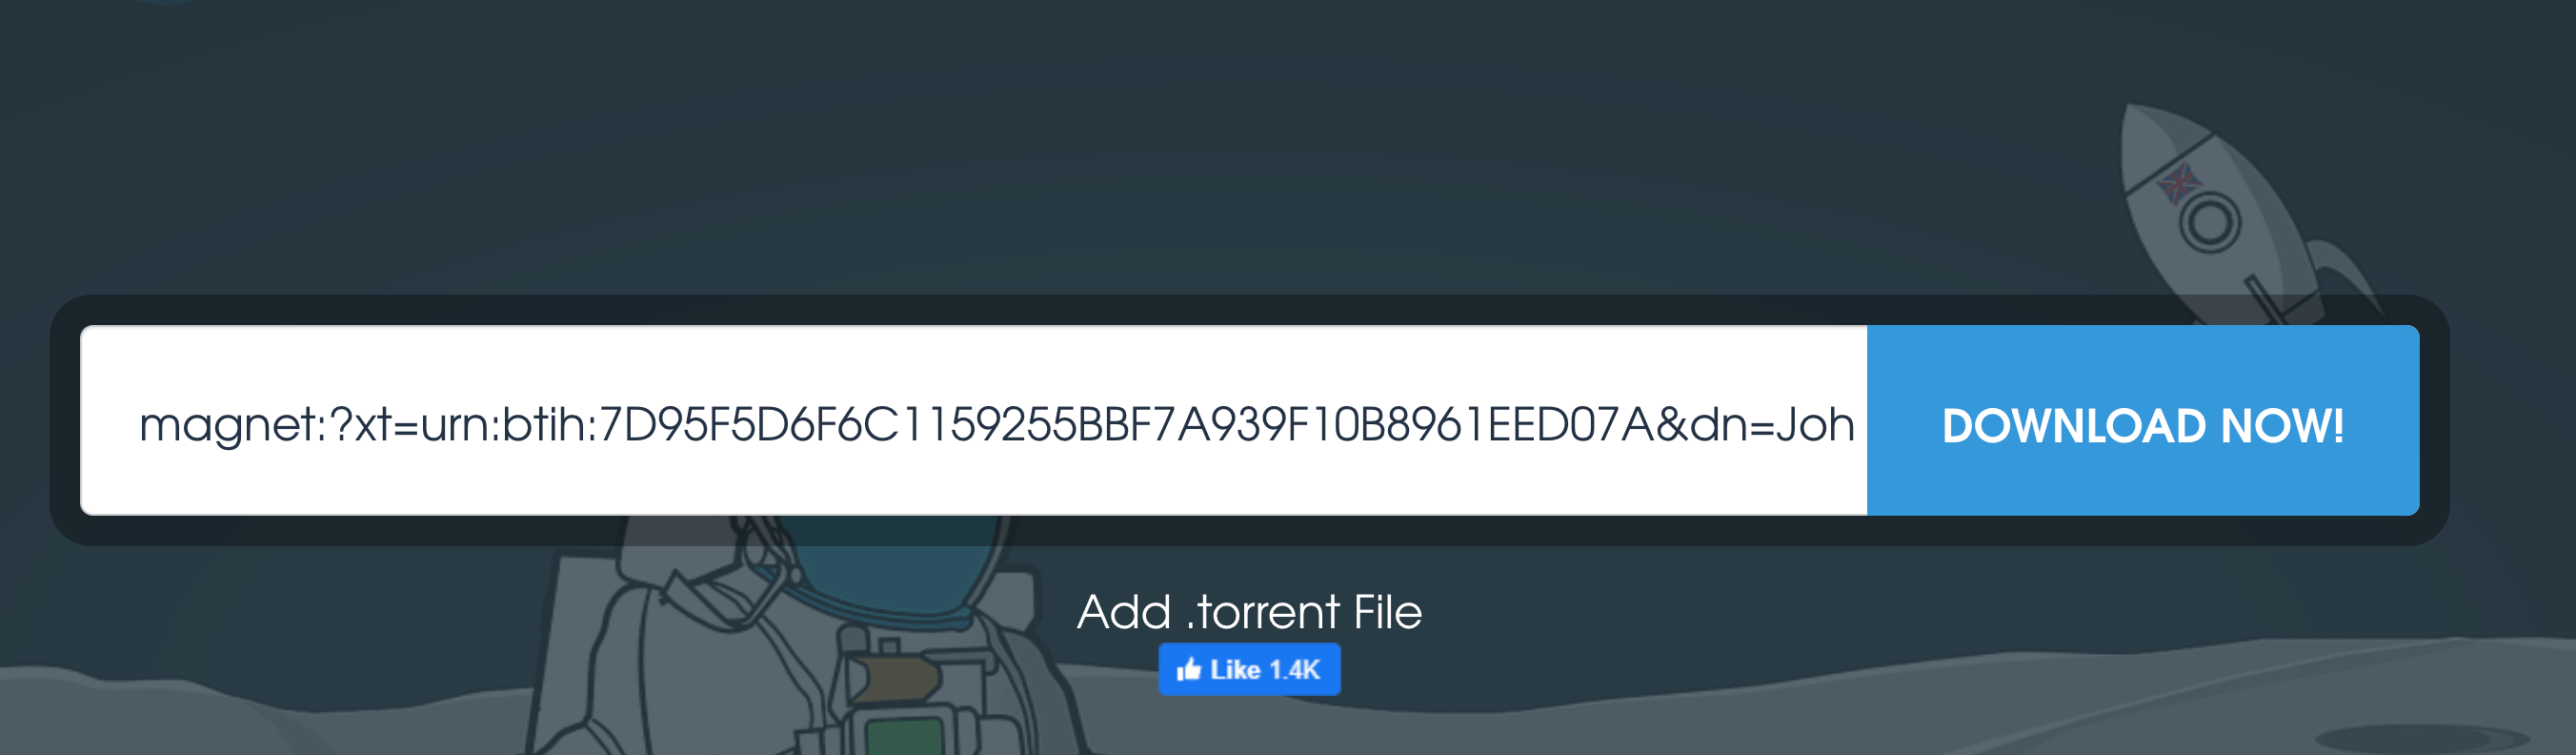 Торрент начнет загрузку файла.